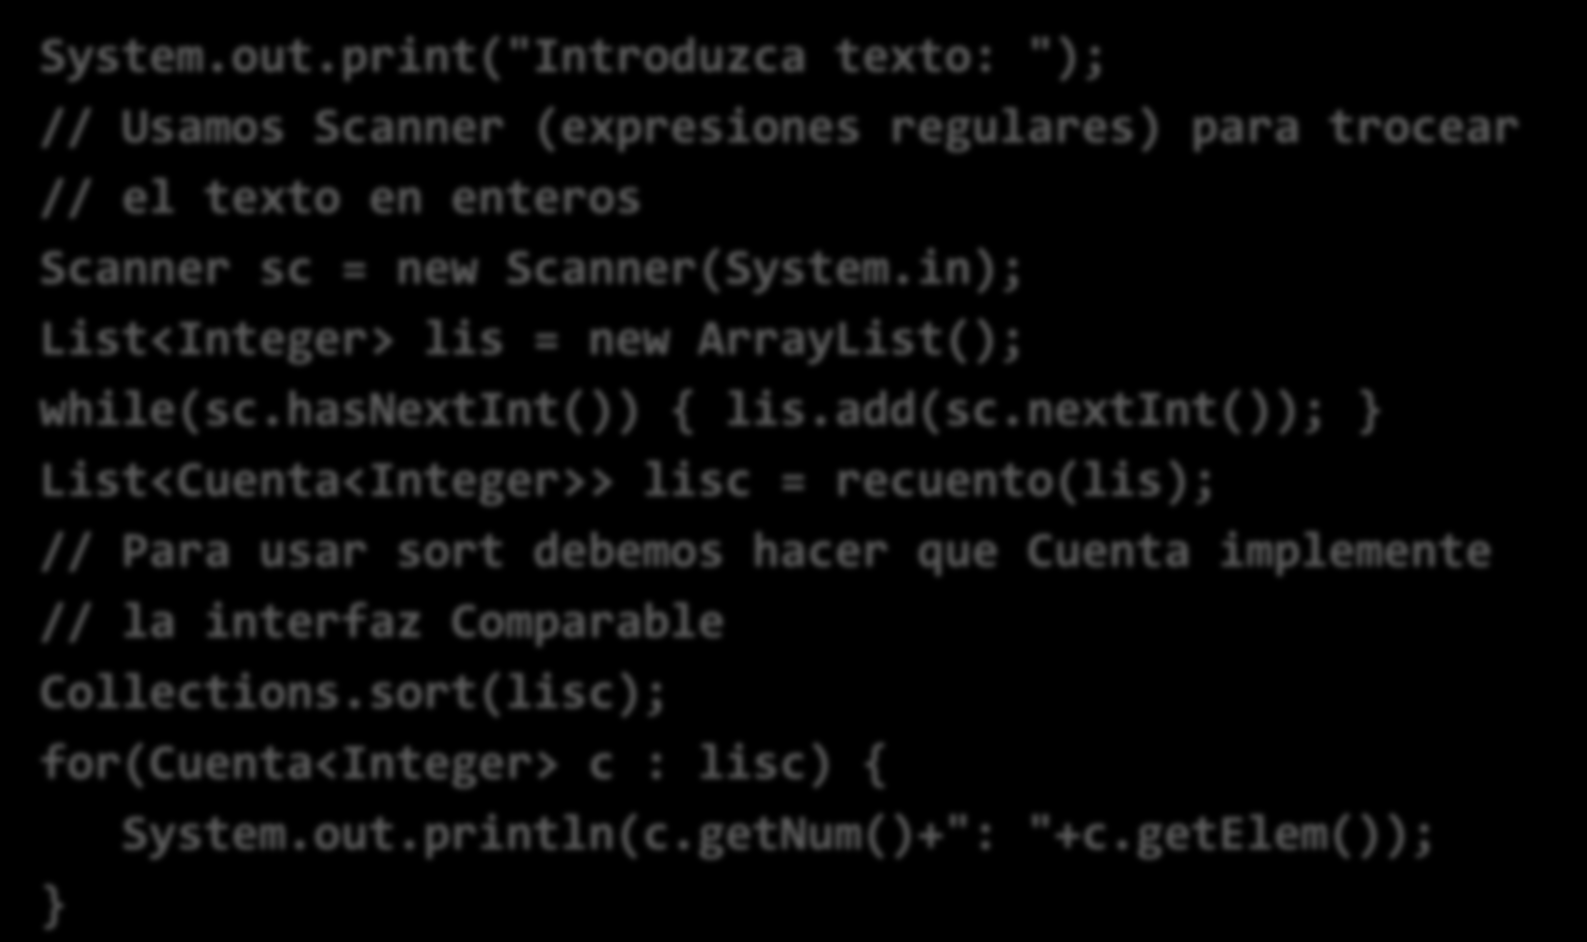 Algoritmo para enteros System.out.print("Introduzca texto: "); // Usamos Scanner (expresiones regulares) para trocear // el texto en enteros Scanner sc = new Scanner(System.